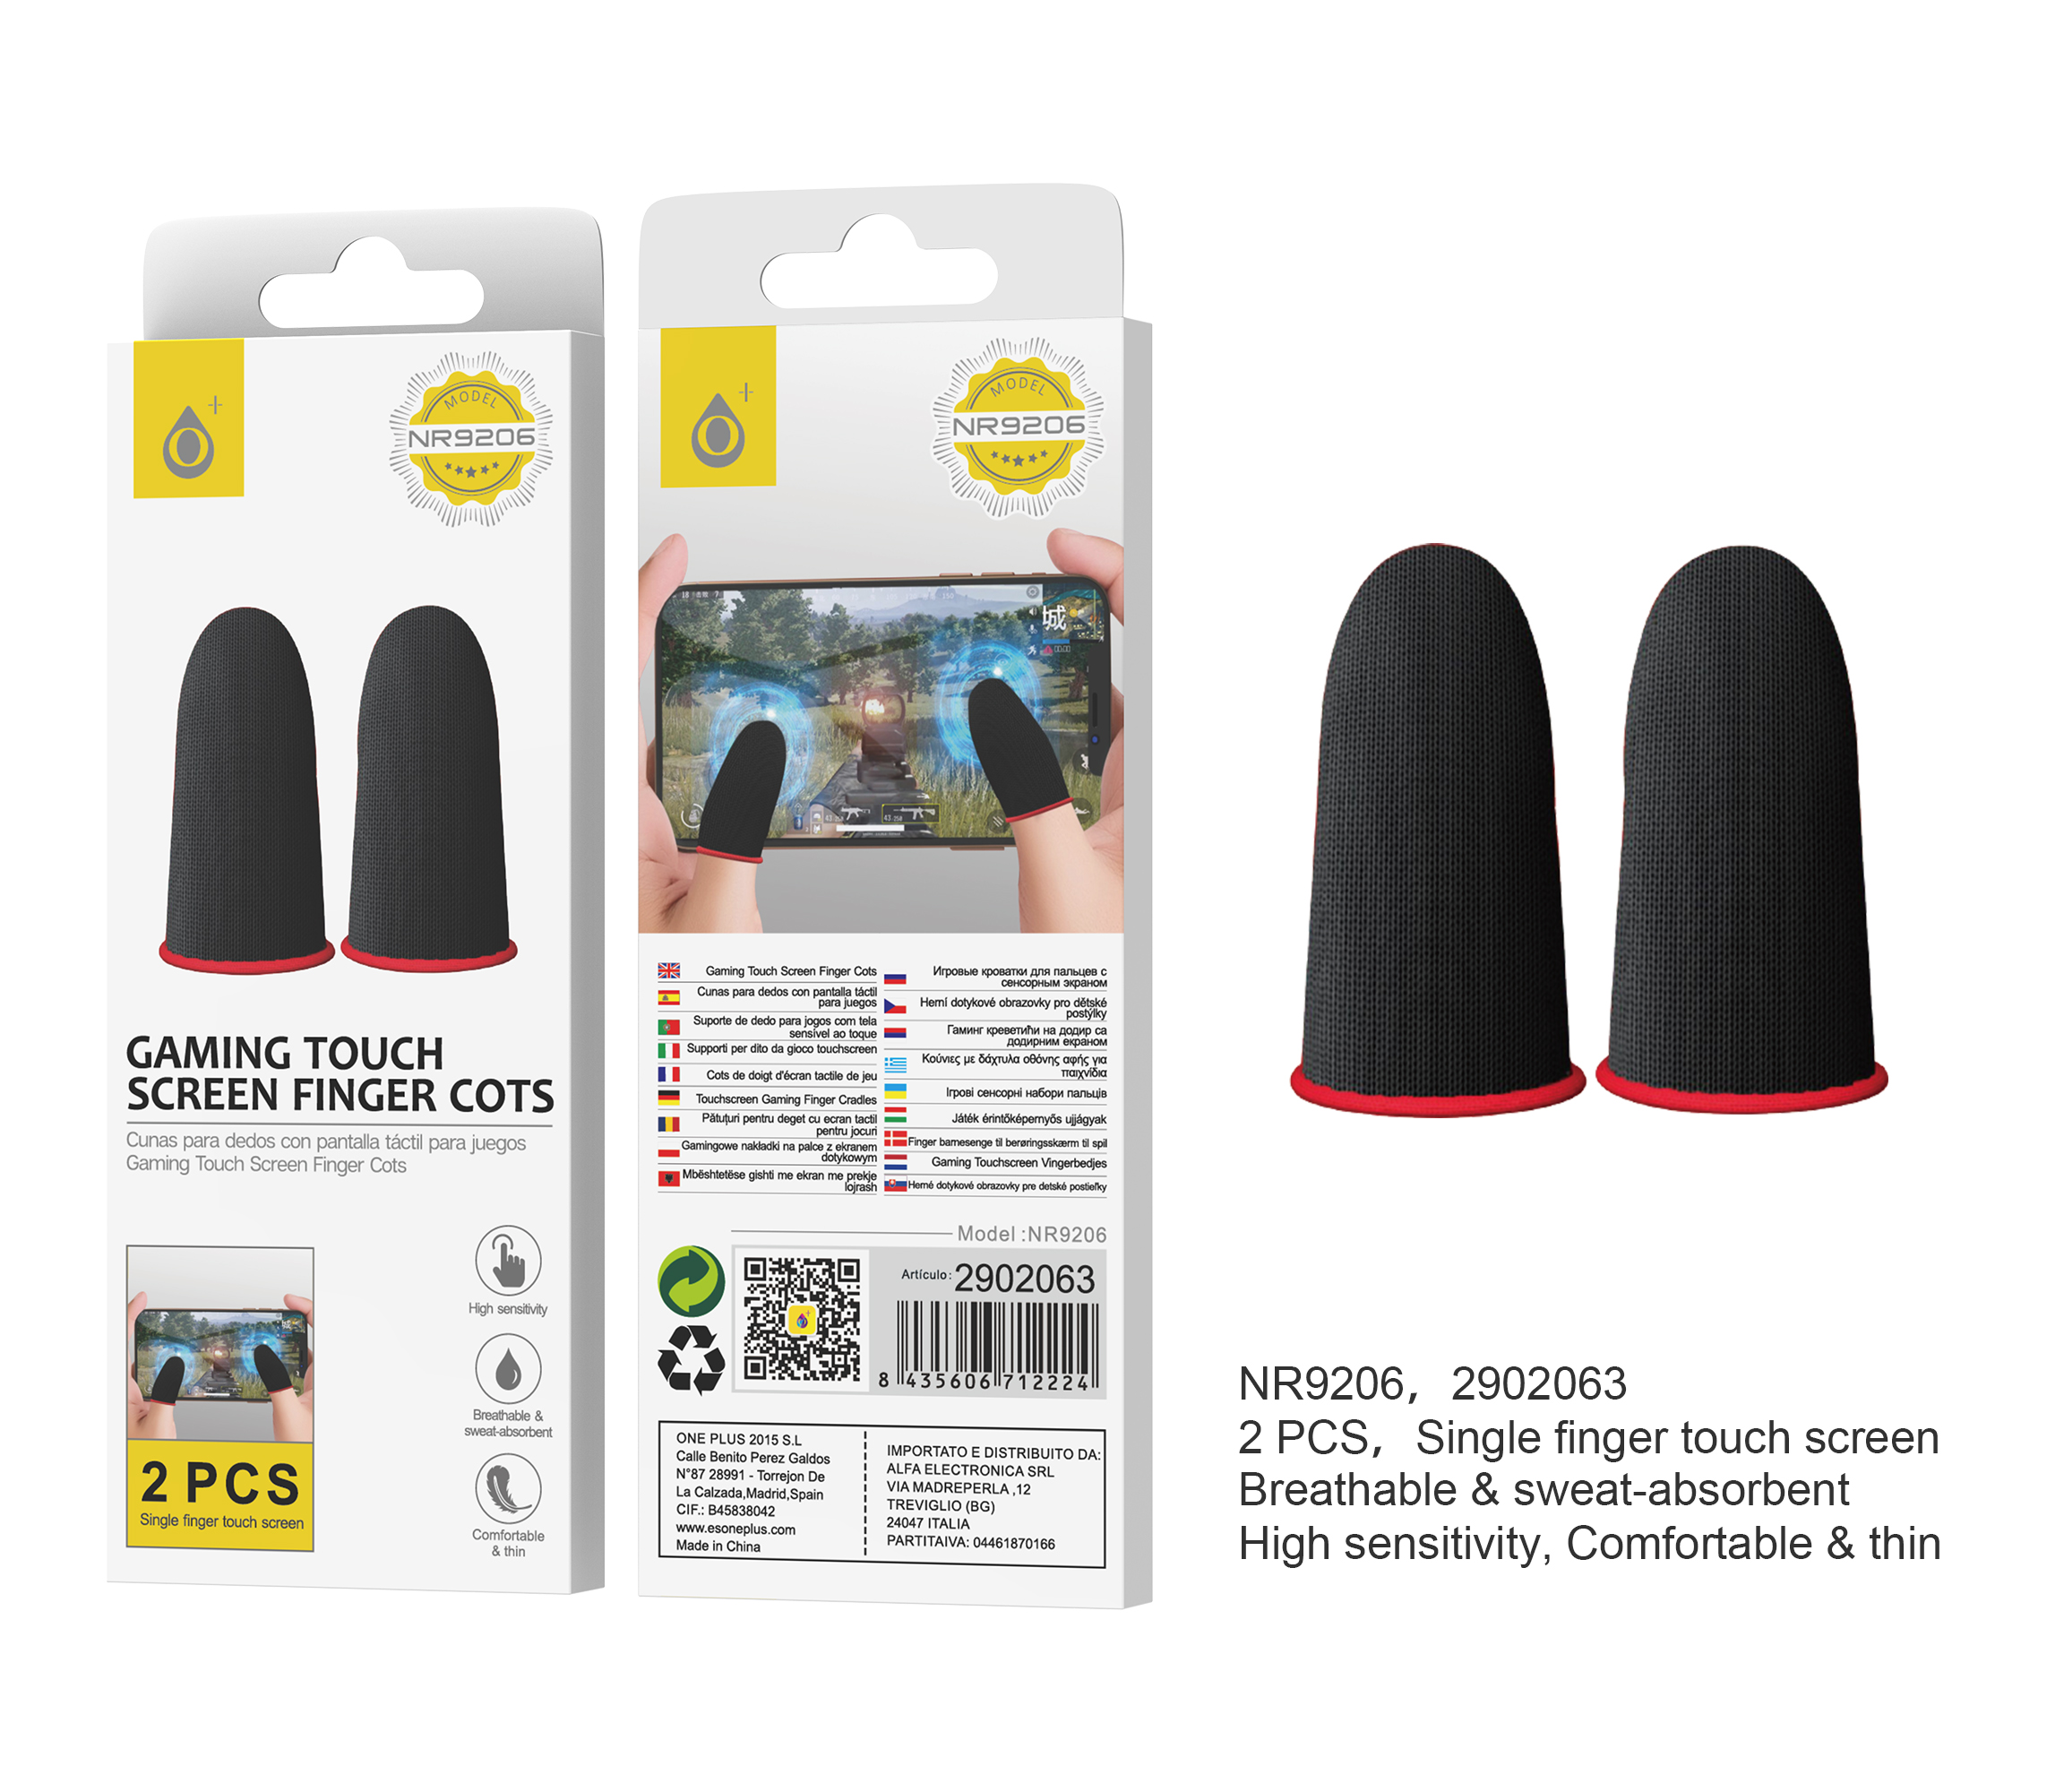 NR9206 RJ Mangas para Dedos de Juegos moviles, para 2 dedos, Antisudor y Comodo, con Alta sensibilidad Rojo